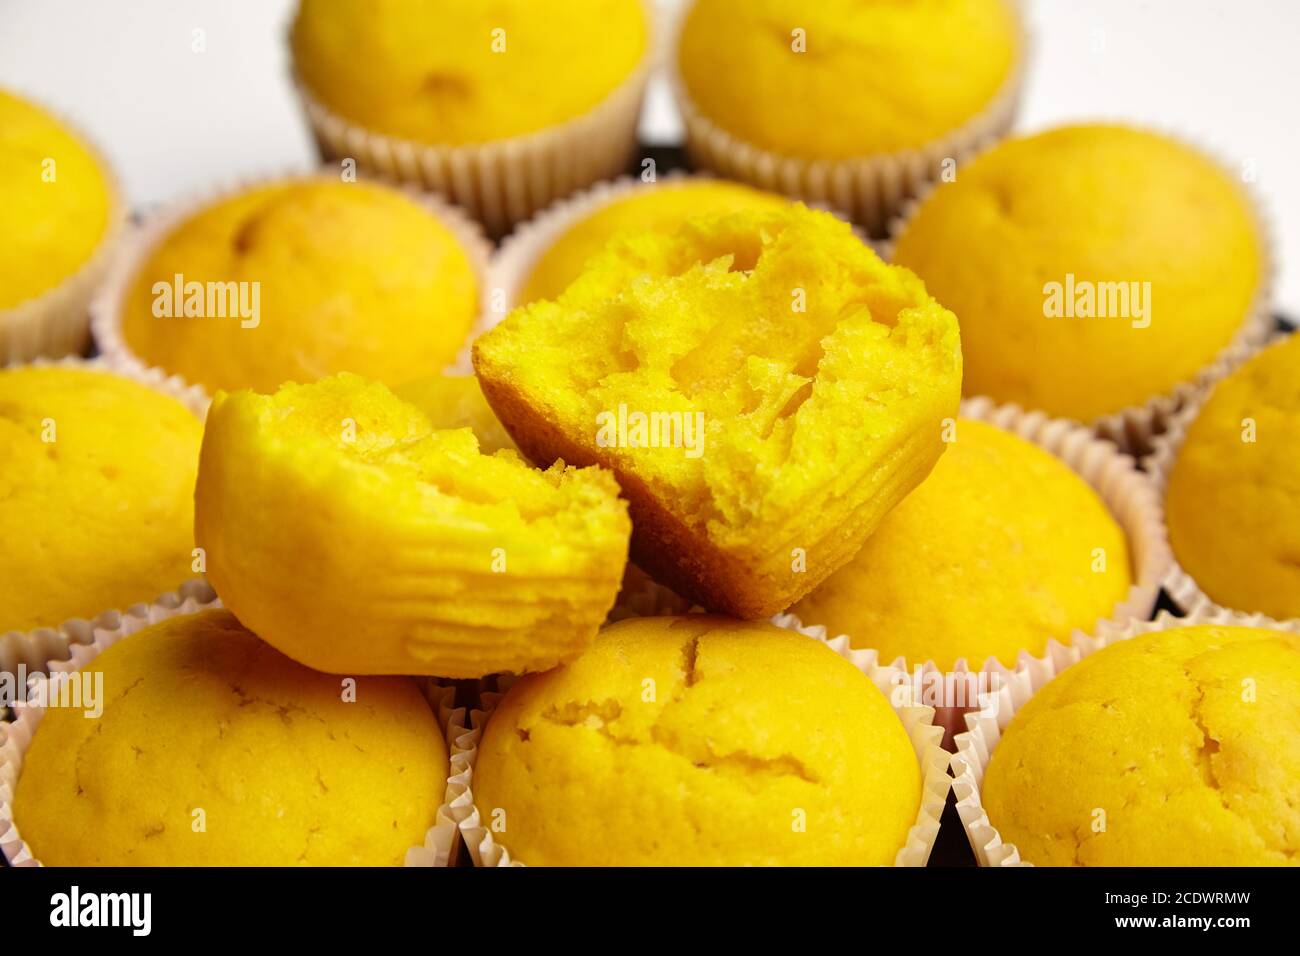 Cupcakes aux légumes, gros plan. Moitié de muffin de citrouille jaune, foyer sélectif. Boulangerie maison, dessert sucré. Aliments à base de plantes, farine Banque D'Images